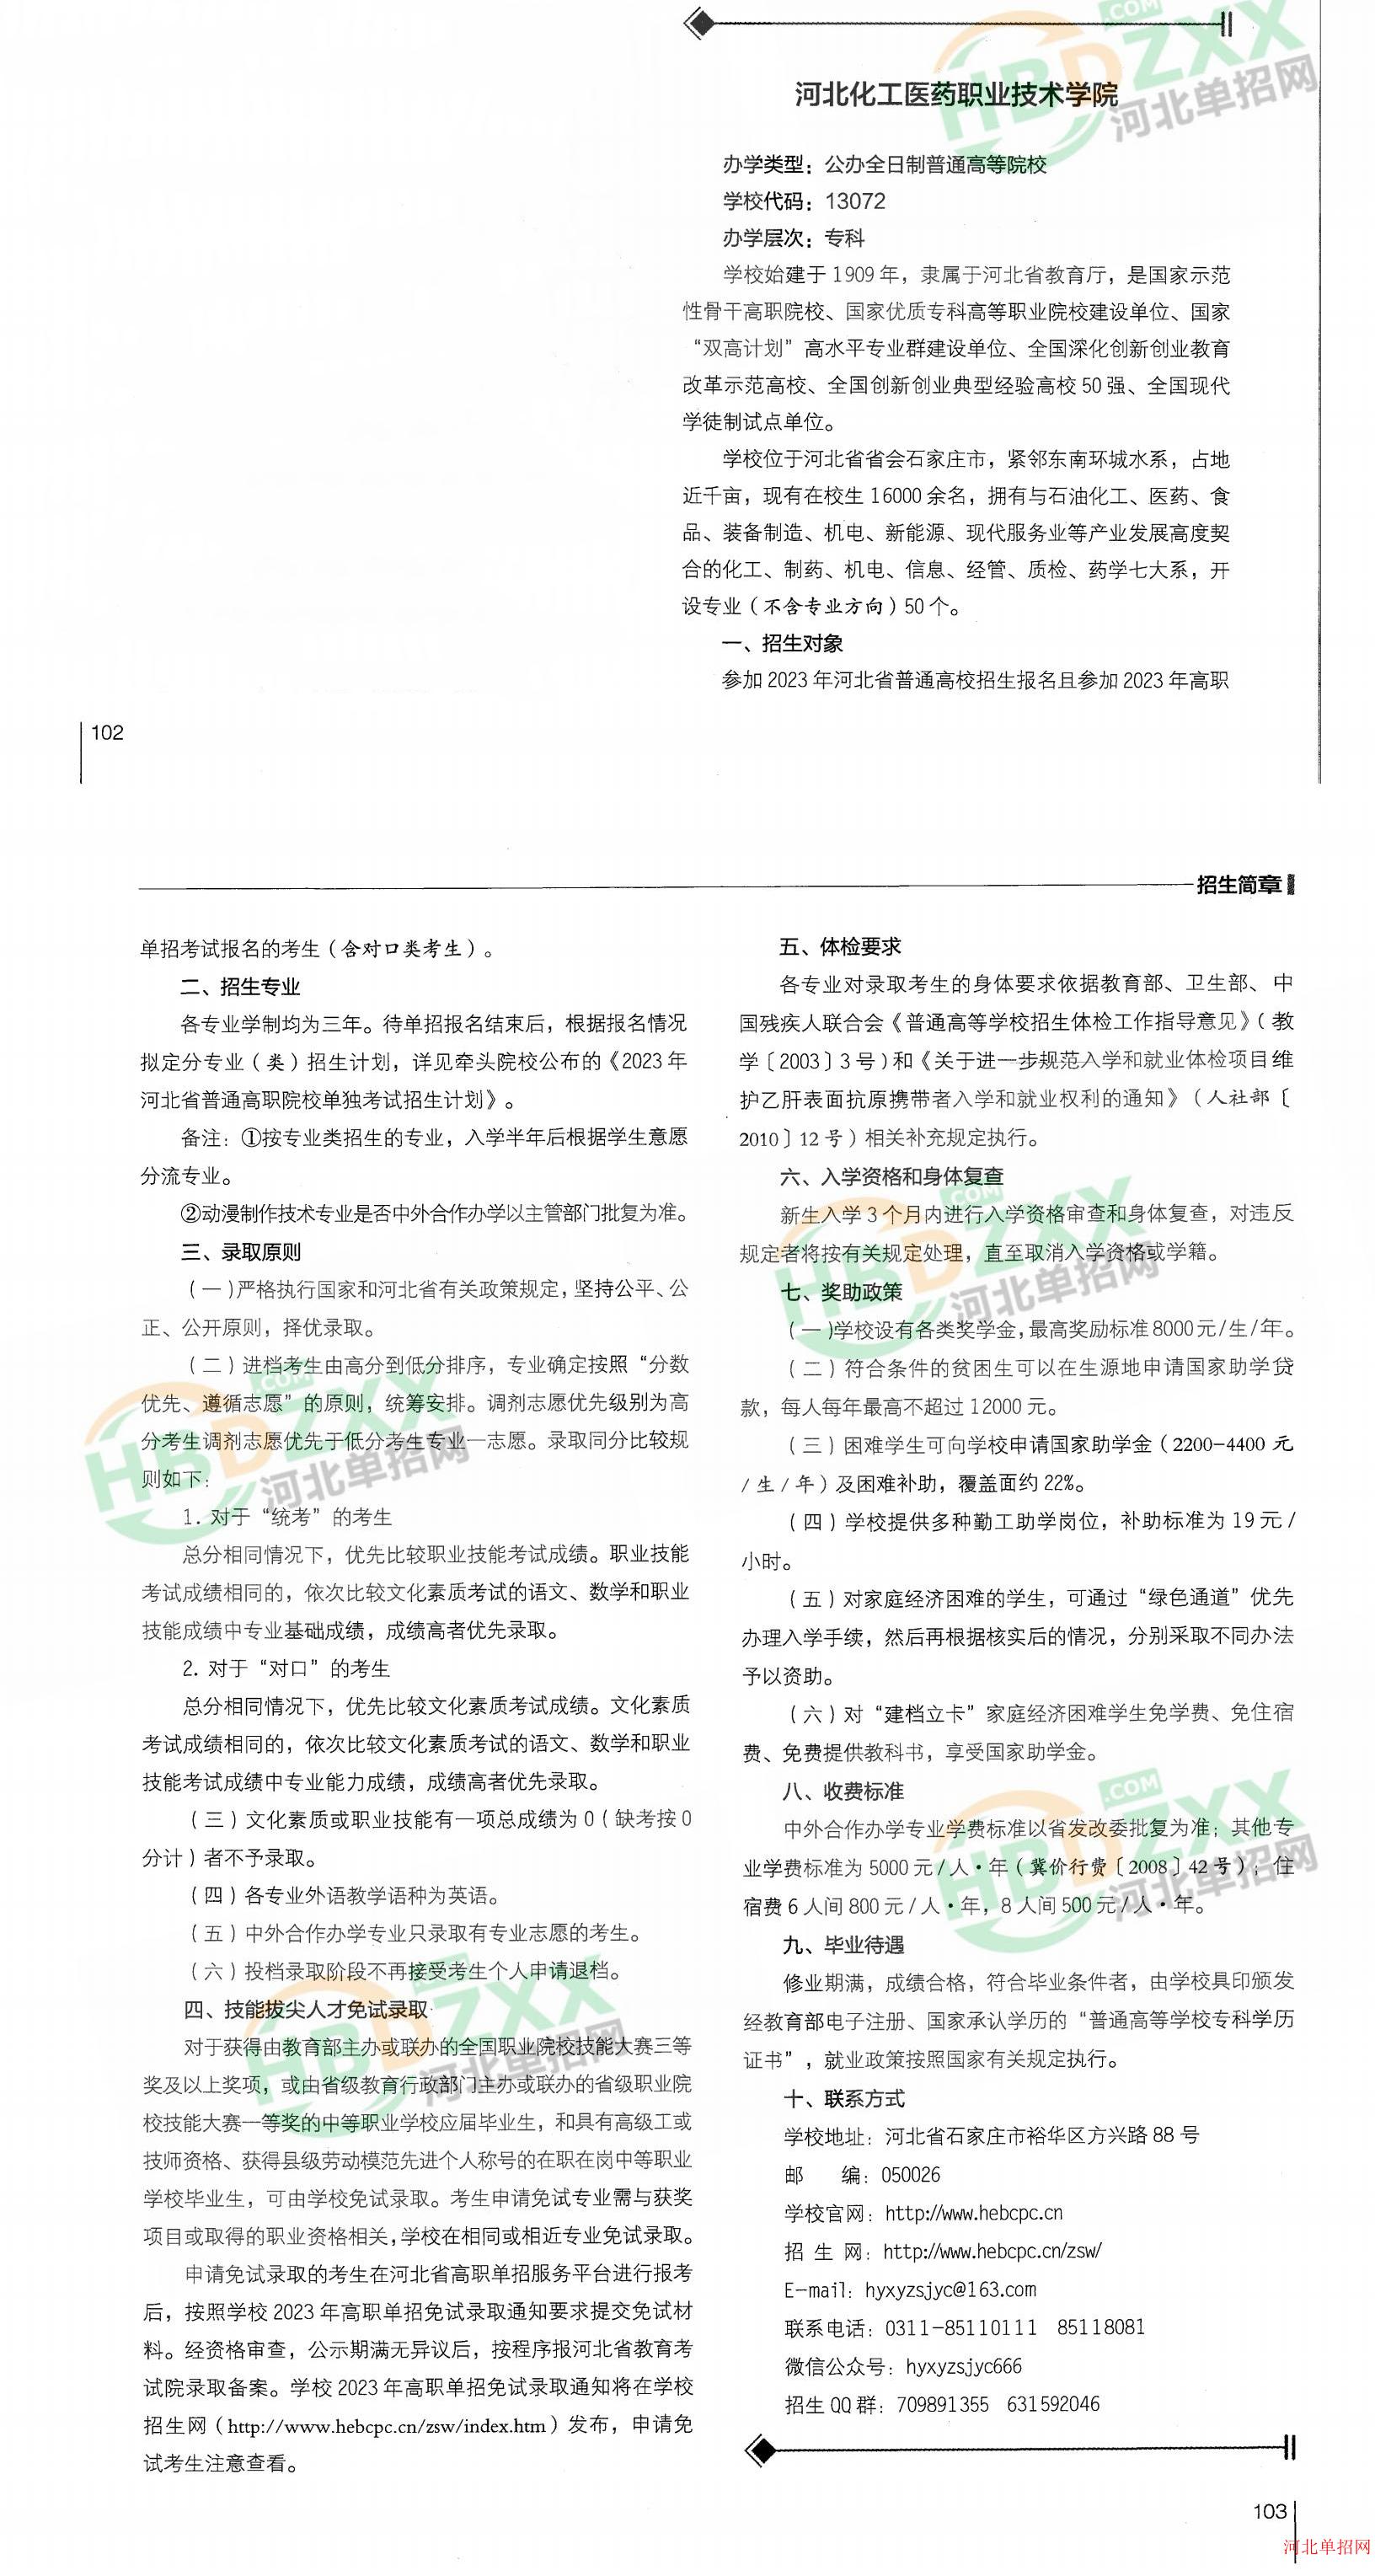 河北化工医药职业技术学院2023年单招招生简章 图2